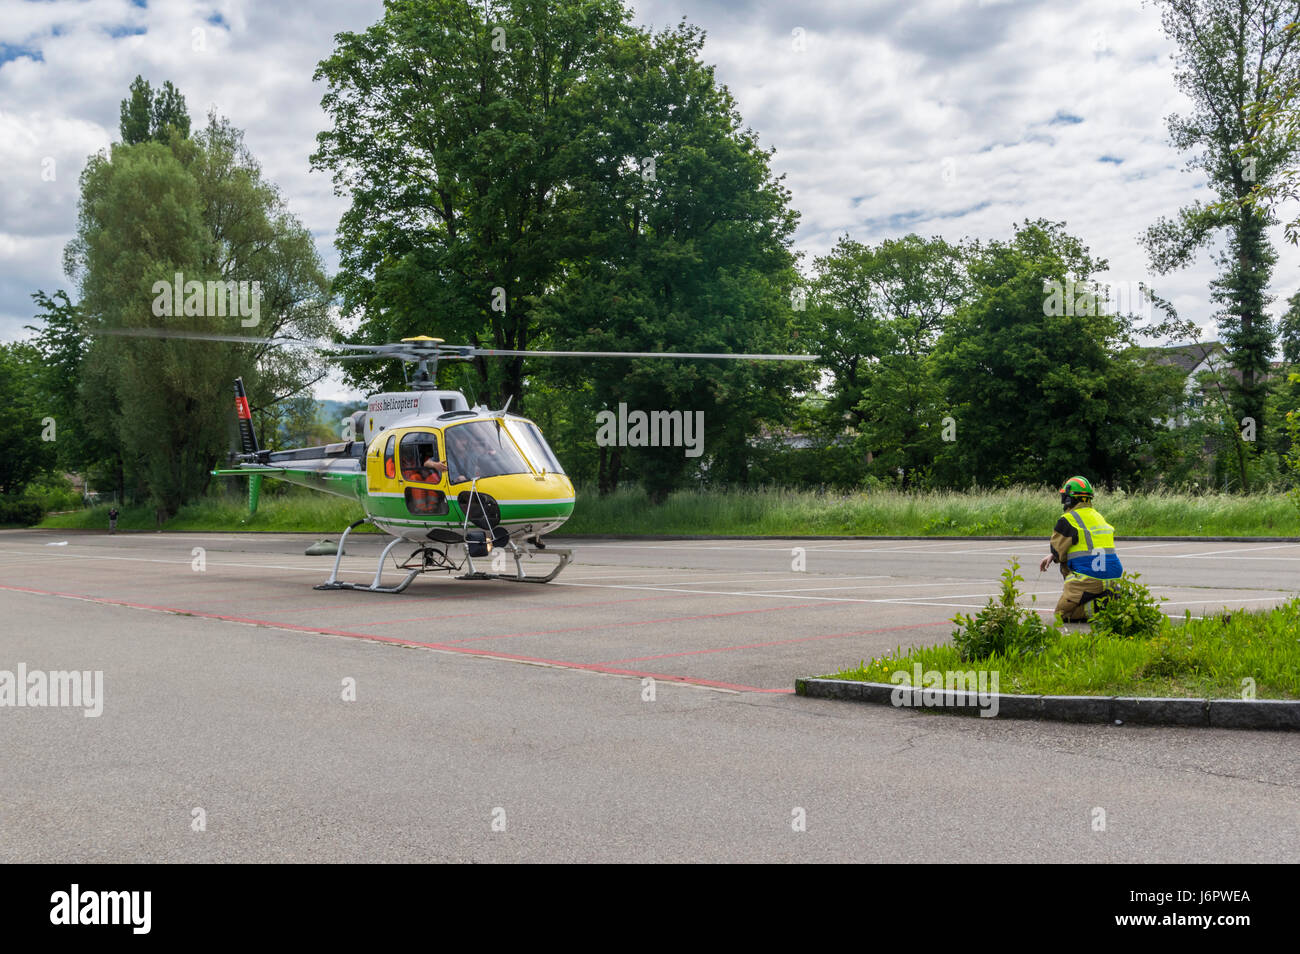 Aérospatiale/Eurocopter AS350 B3 'Écureuil' (Airbus Hubschrauber H125) Landung auf einem Parkplatz. Hubschrauber von Swiss Helicopter AG betrieben. Stockfoto